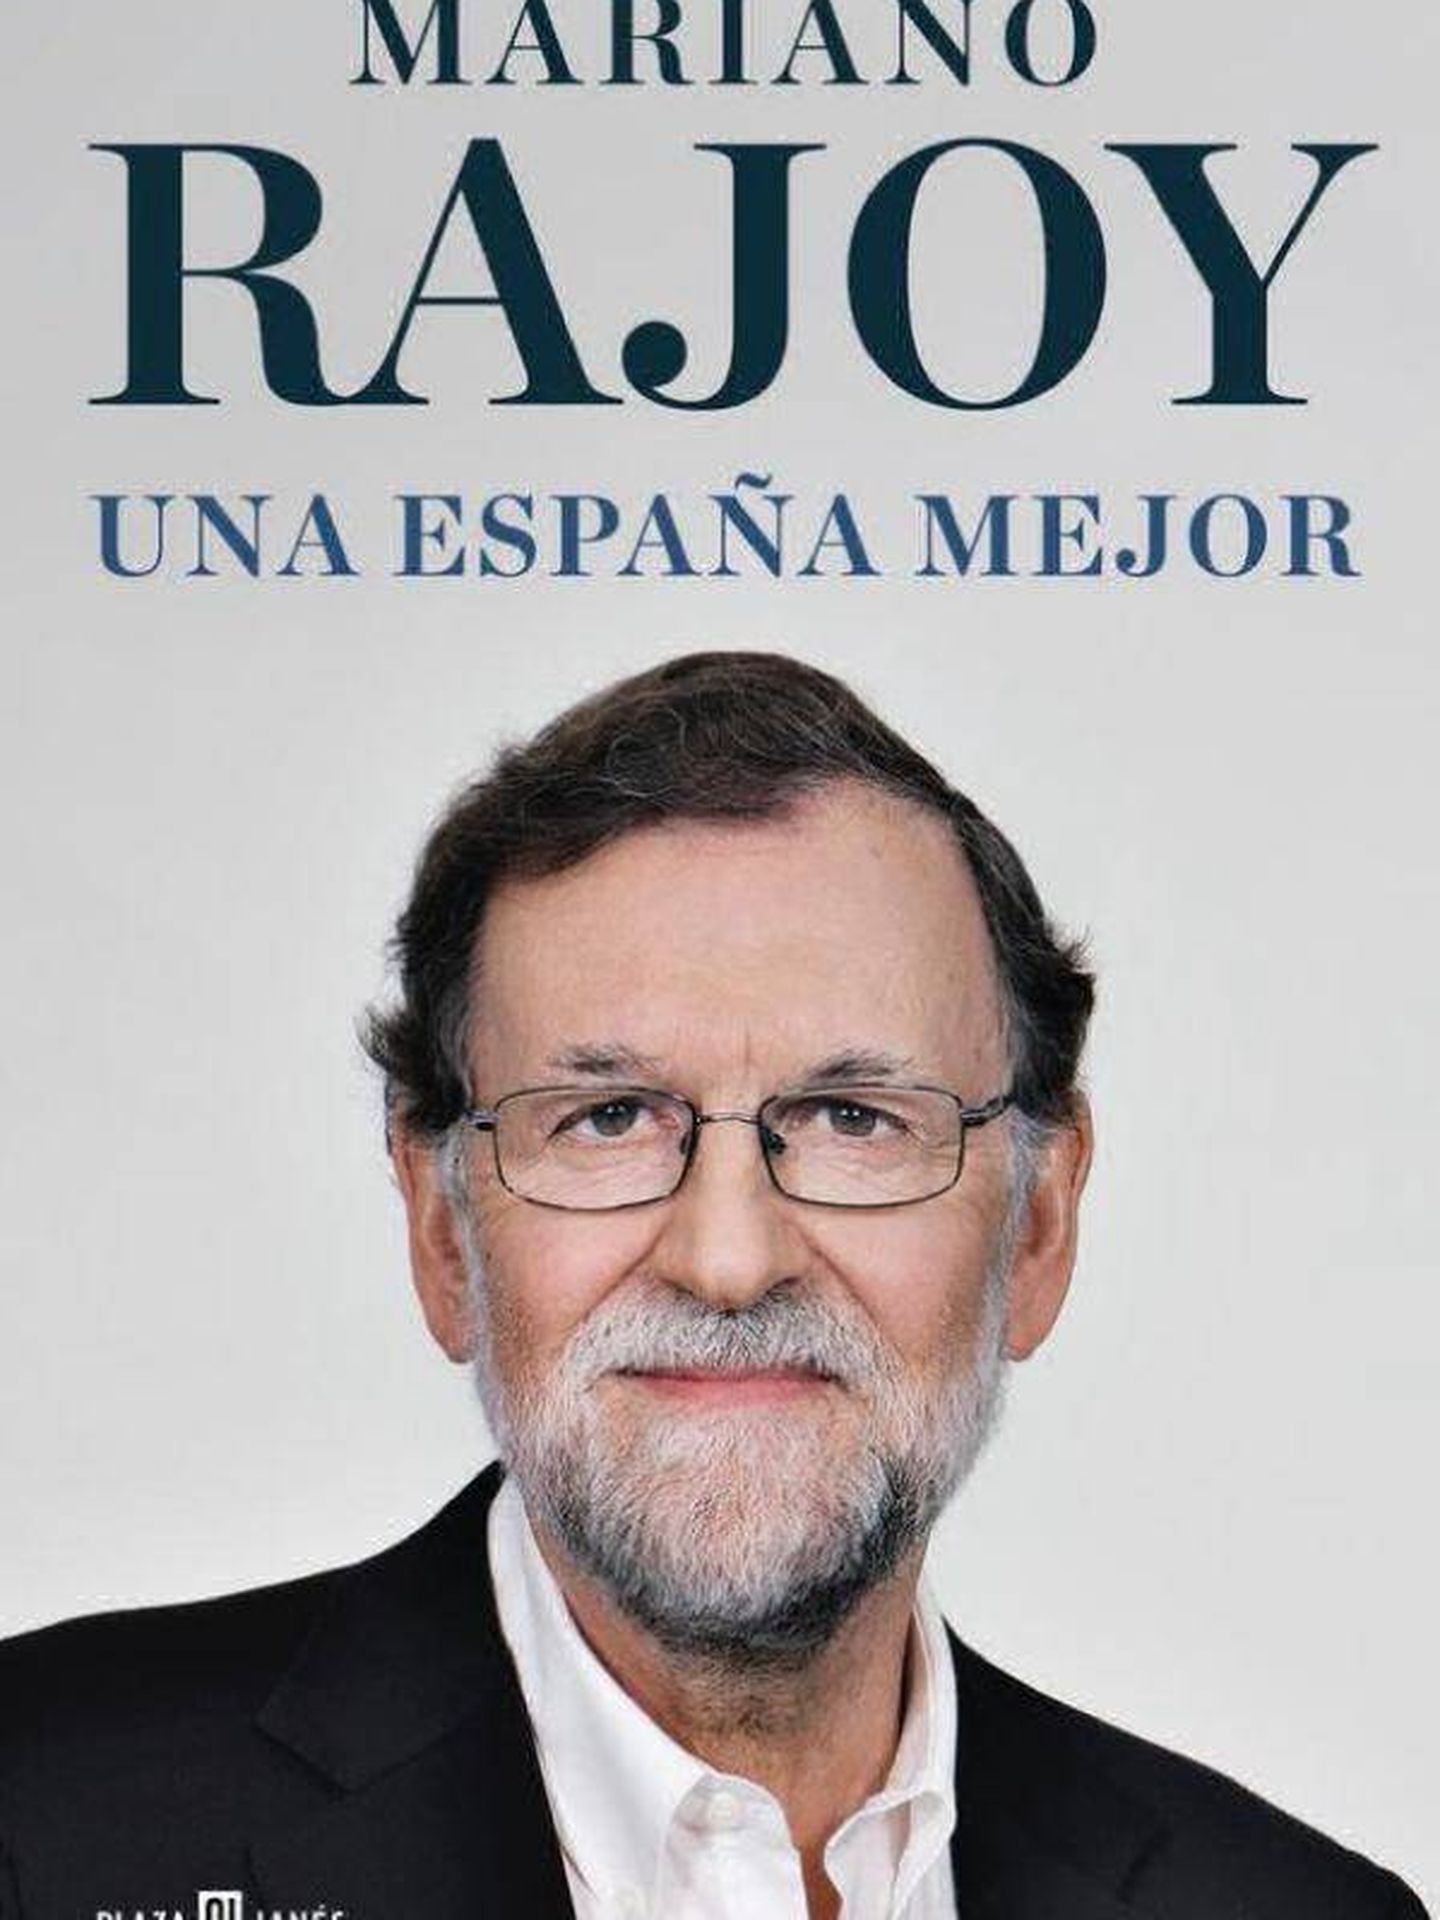 Portada del libro de Mariano Rajoy.